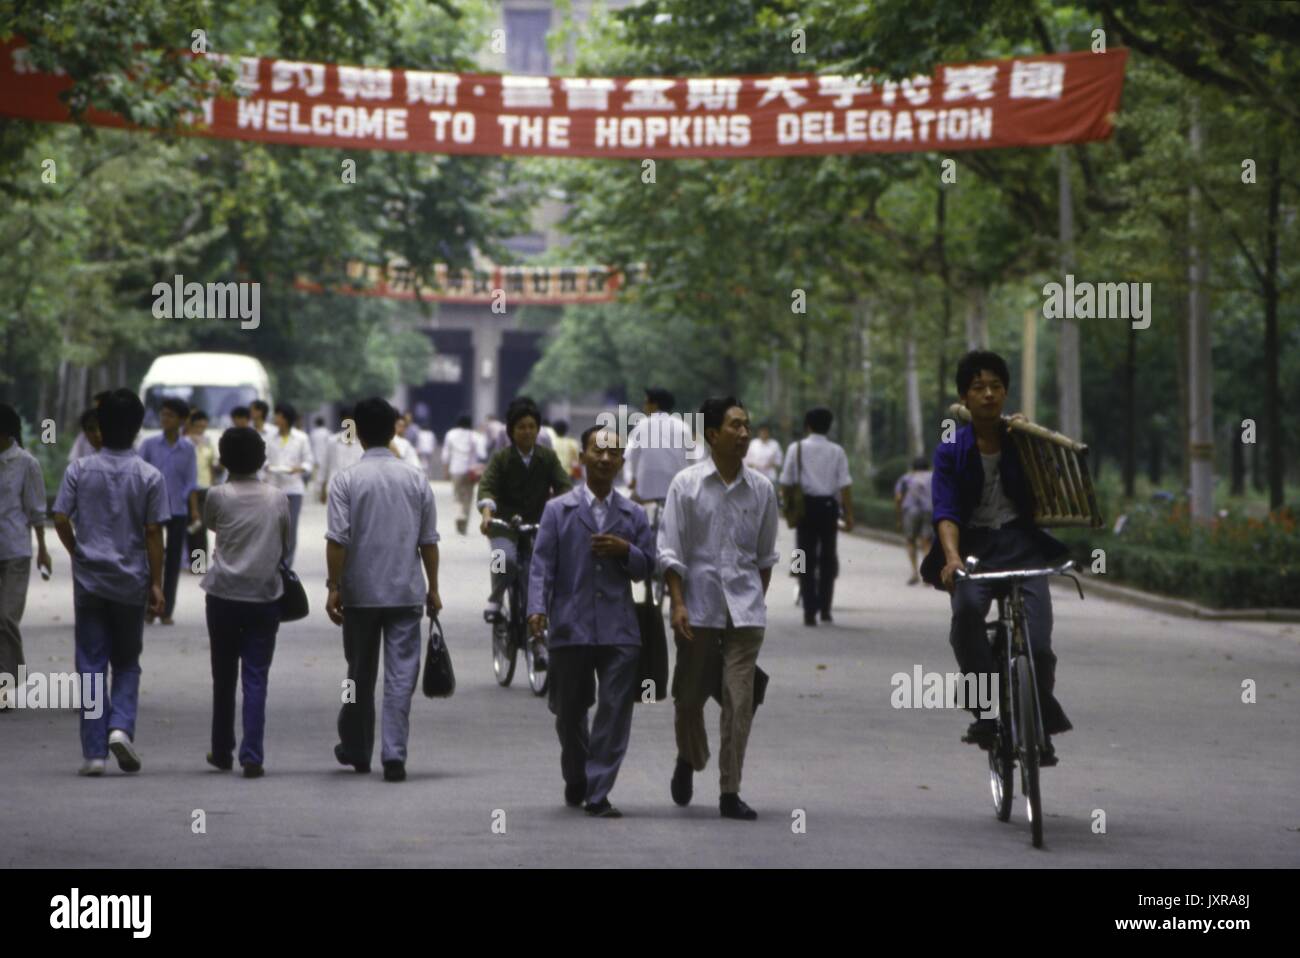 Centre de Nanjing, l'ISC, Hopkins Délégation Nanjing Street scene de personnes à pied et bicyclette sous une bannière pour la délégation Hopkins, 1986. Banque D'Images